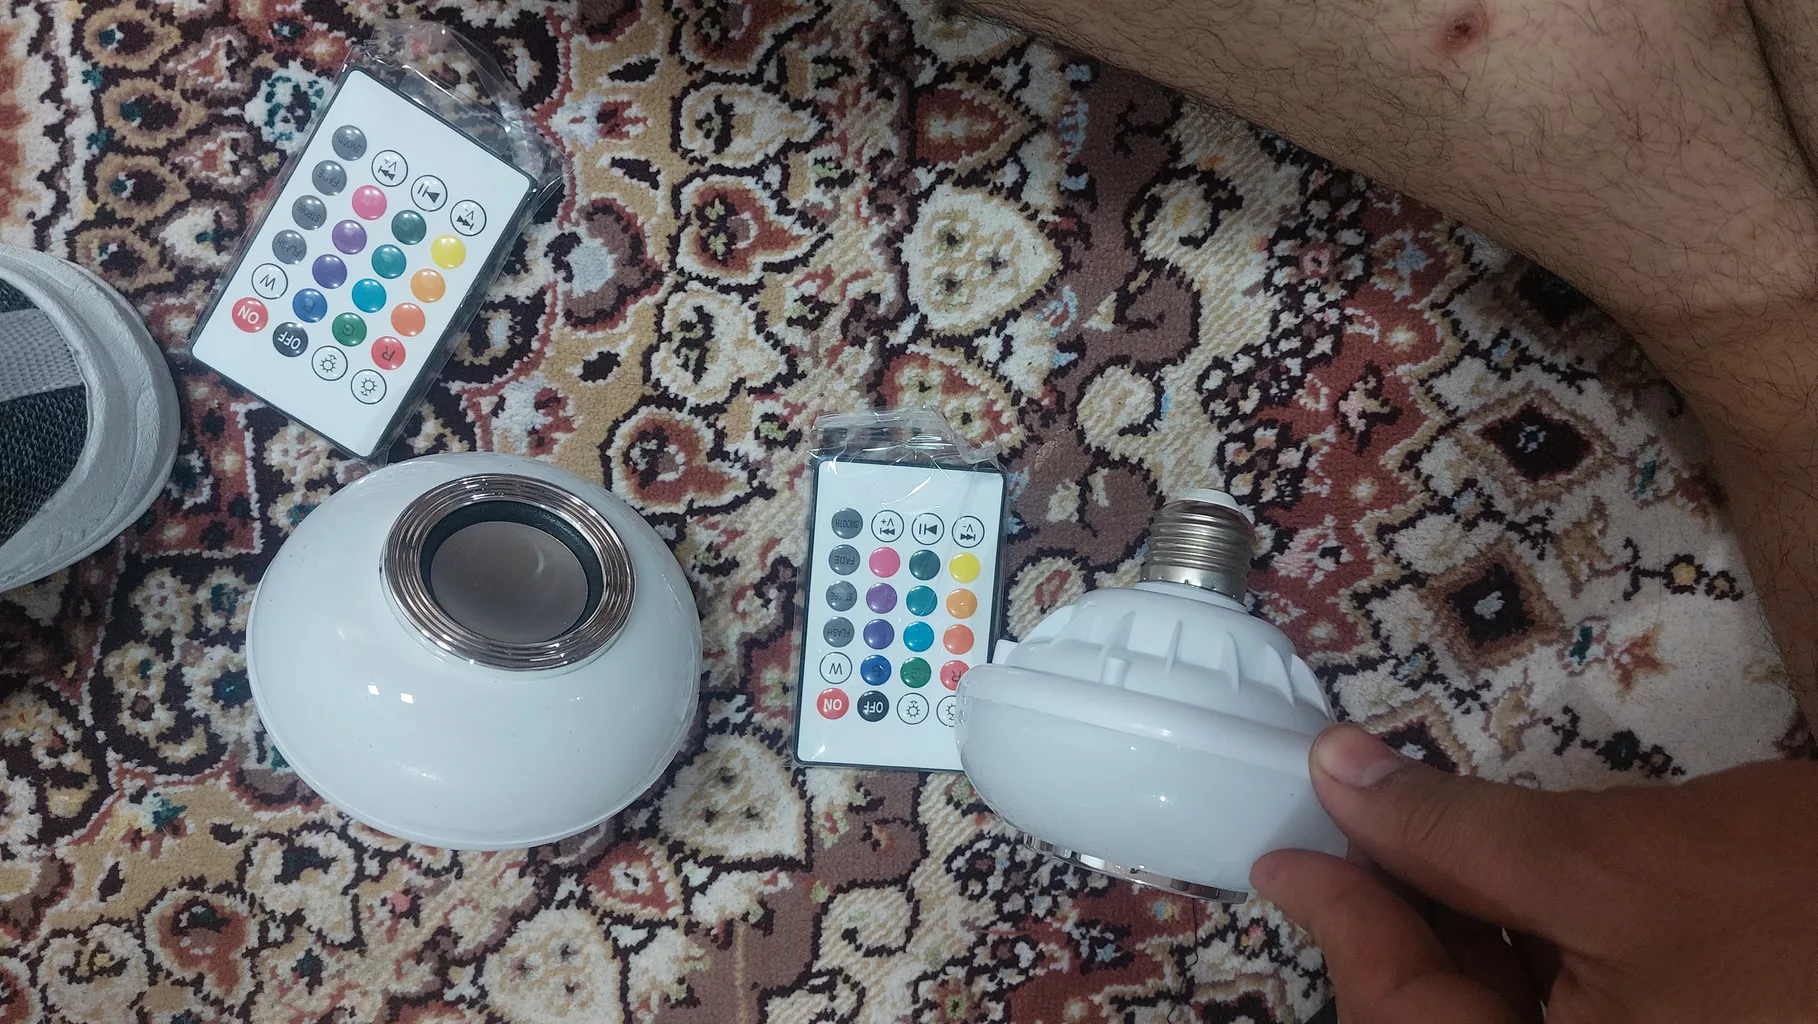 لامپ هوشمند و اسپیکر بلوتوث دیوایس کد Music Bulb